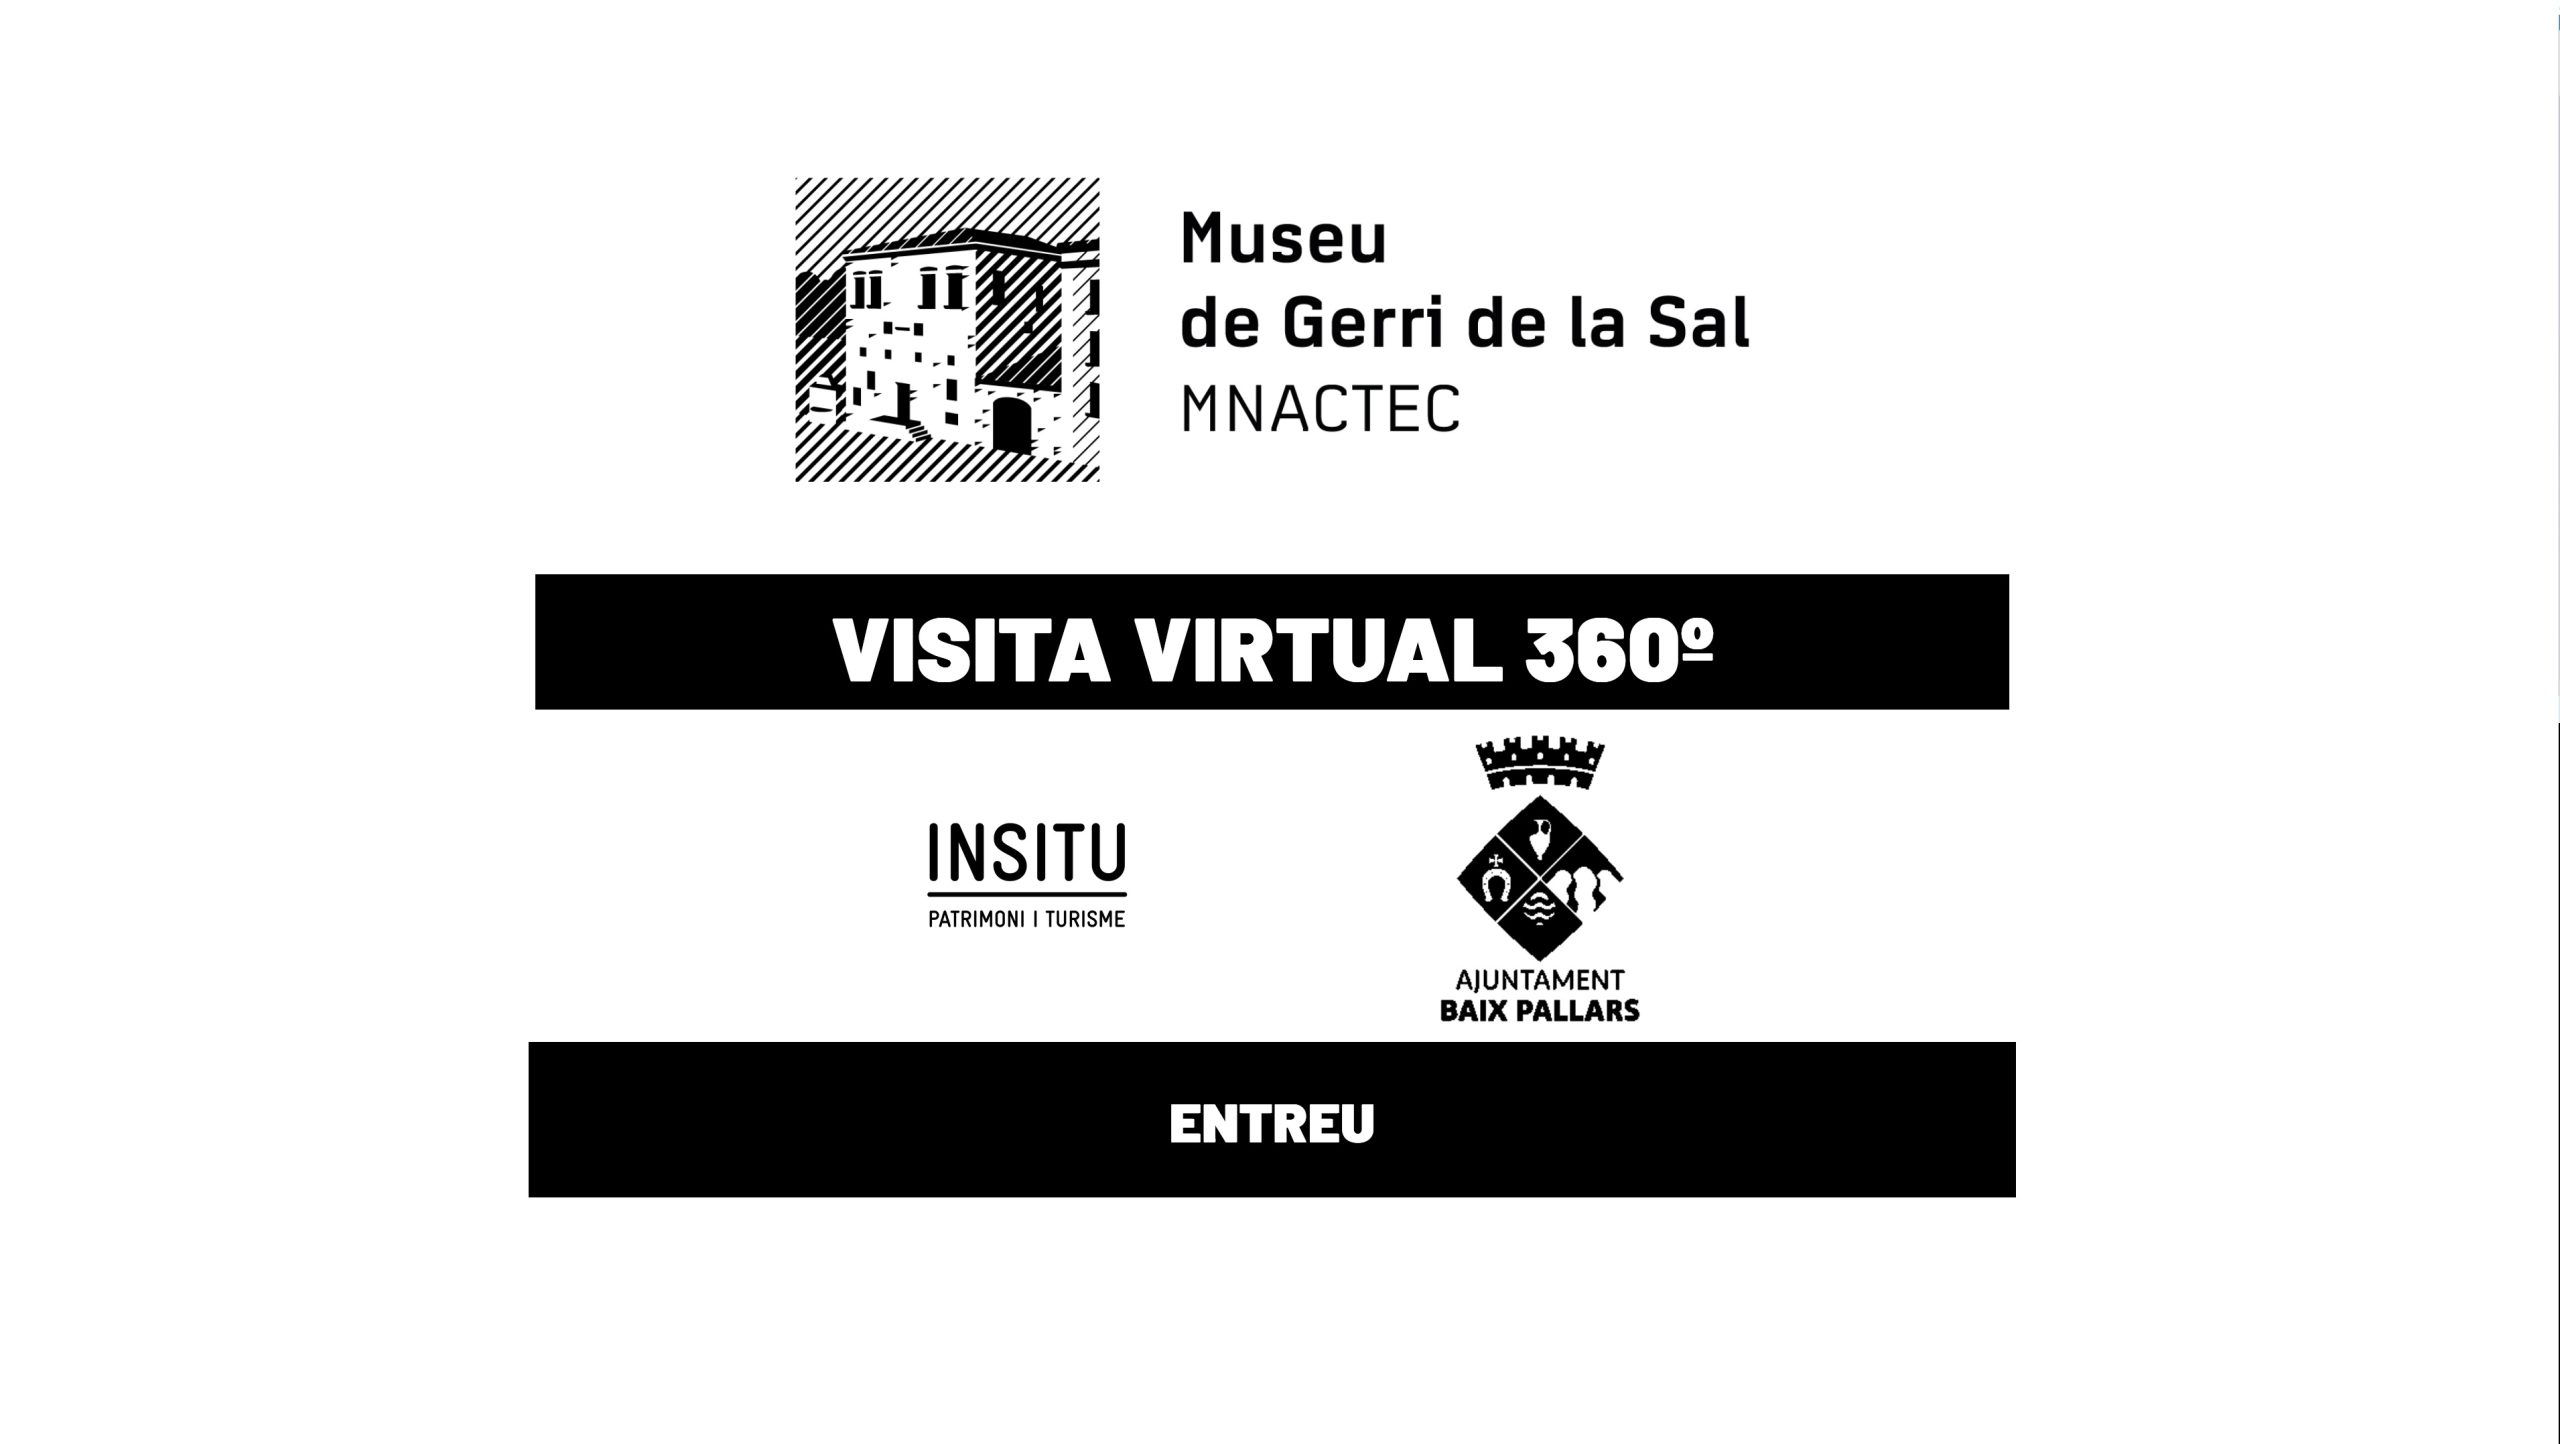 MUSEU DE GERRI DE LA SAL 360